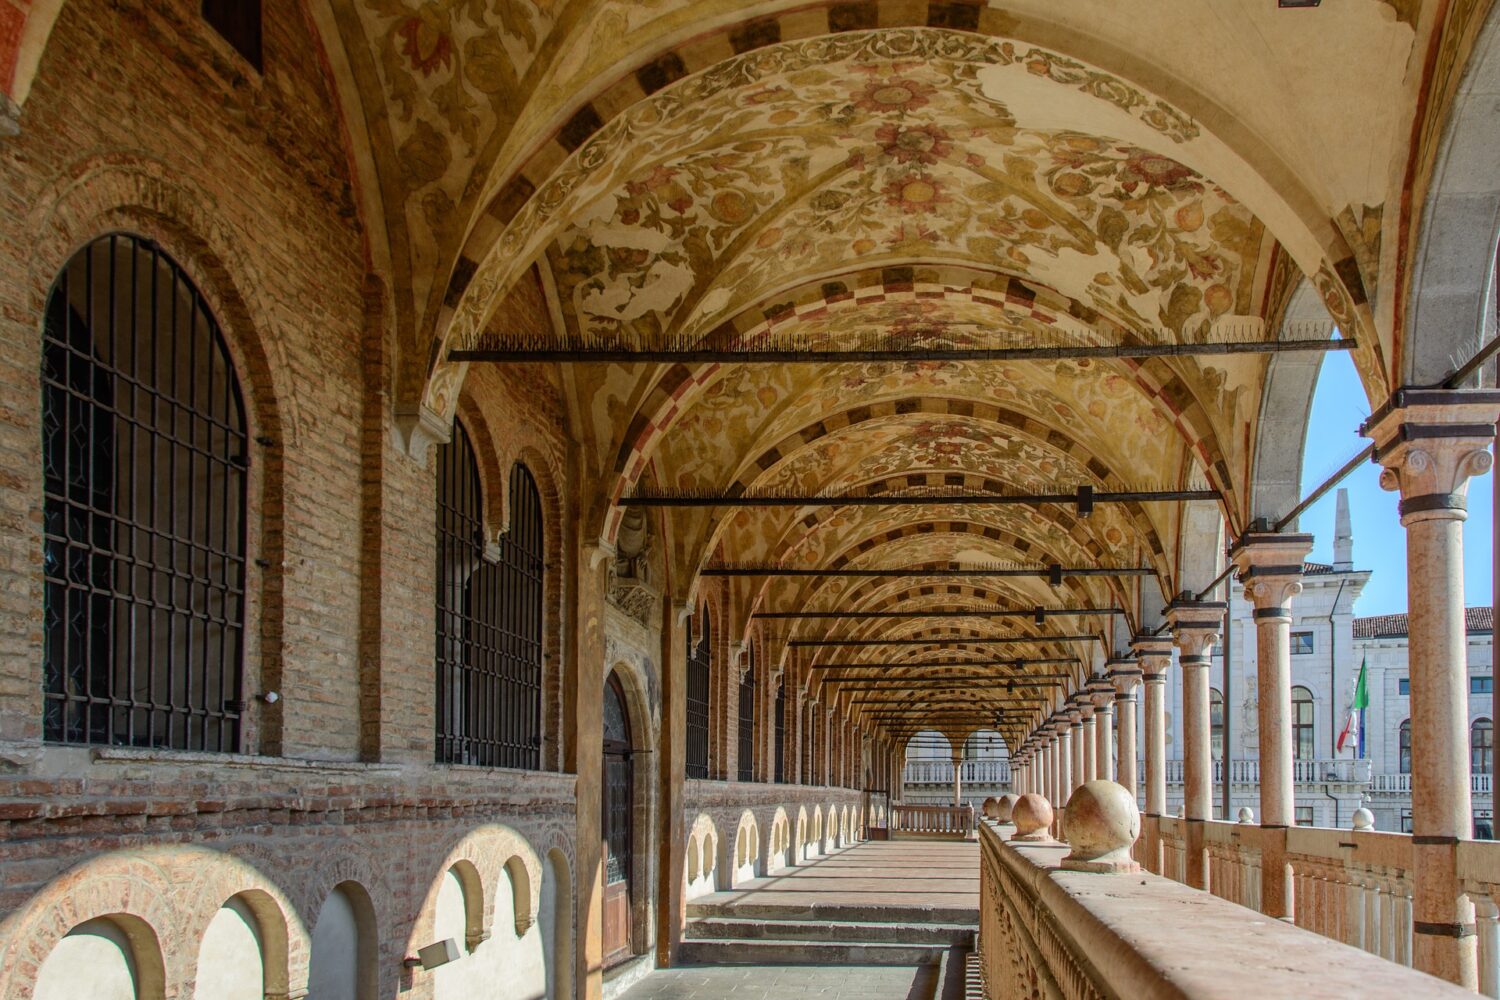 Palazzo della Ragione in Padua